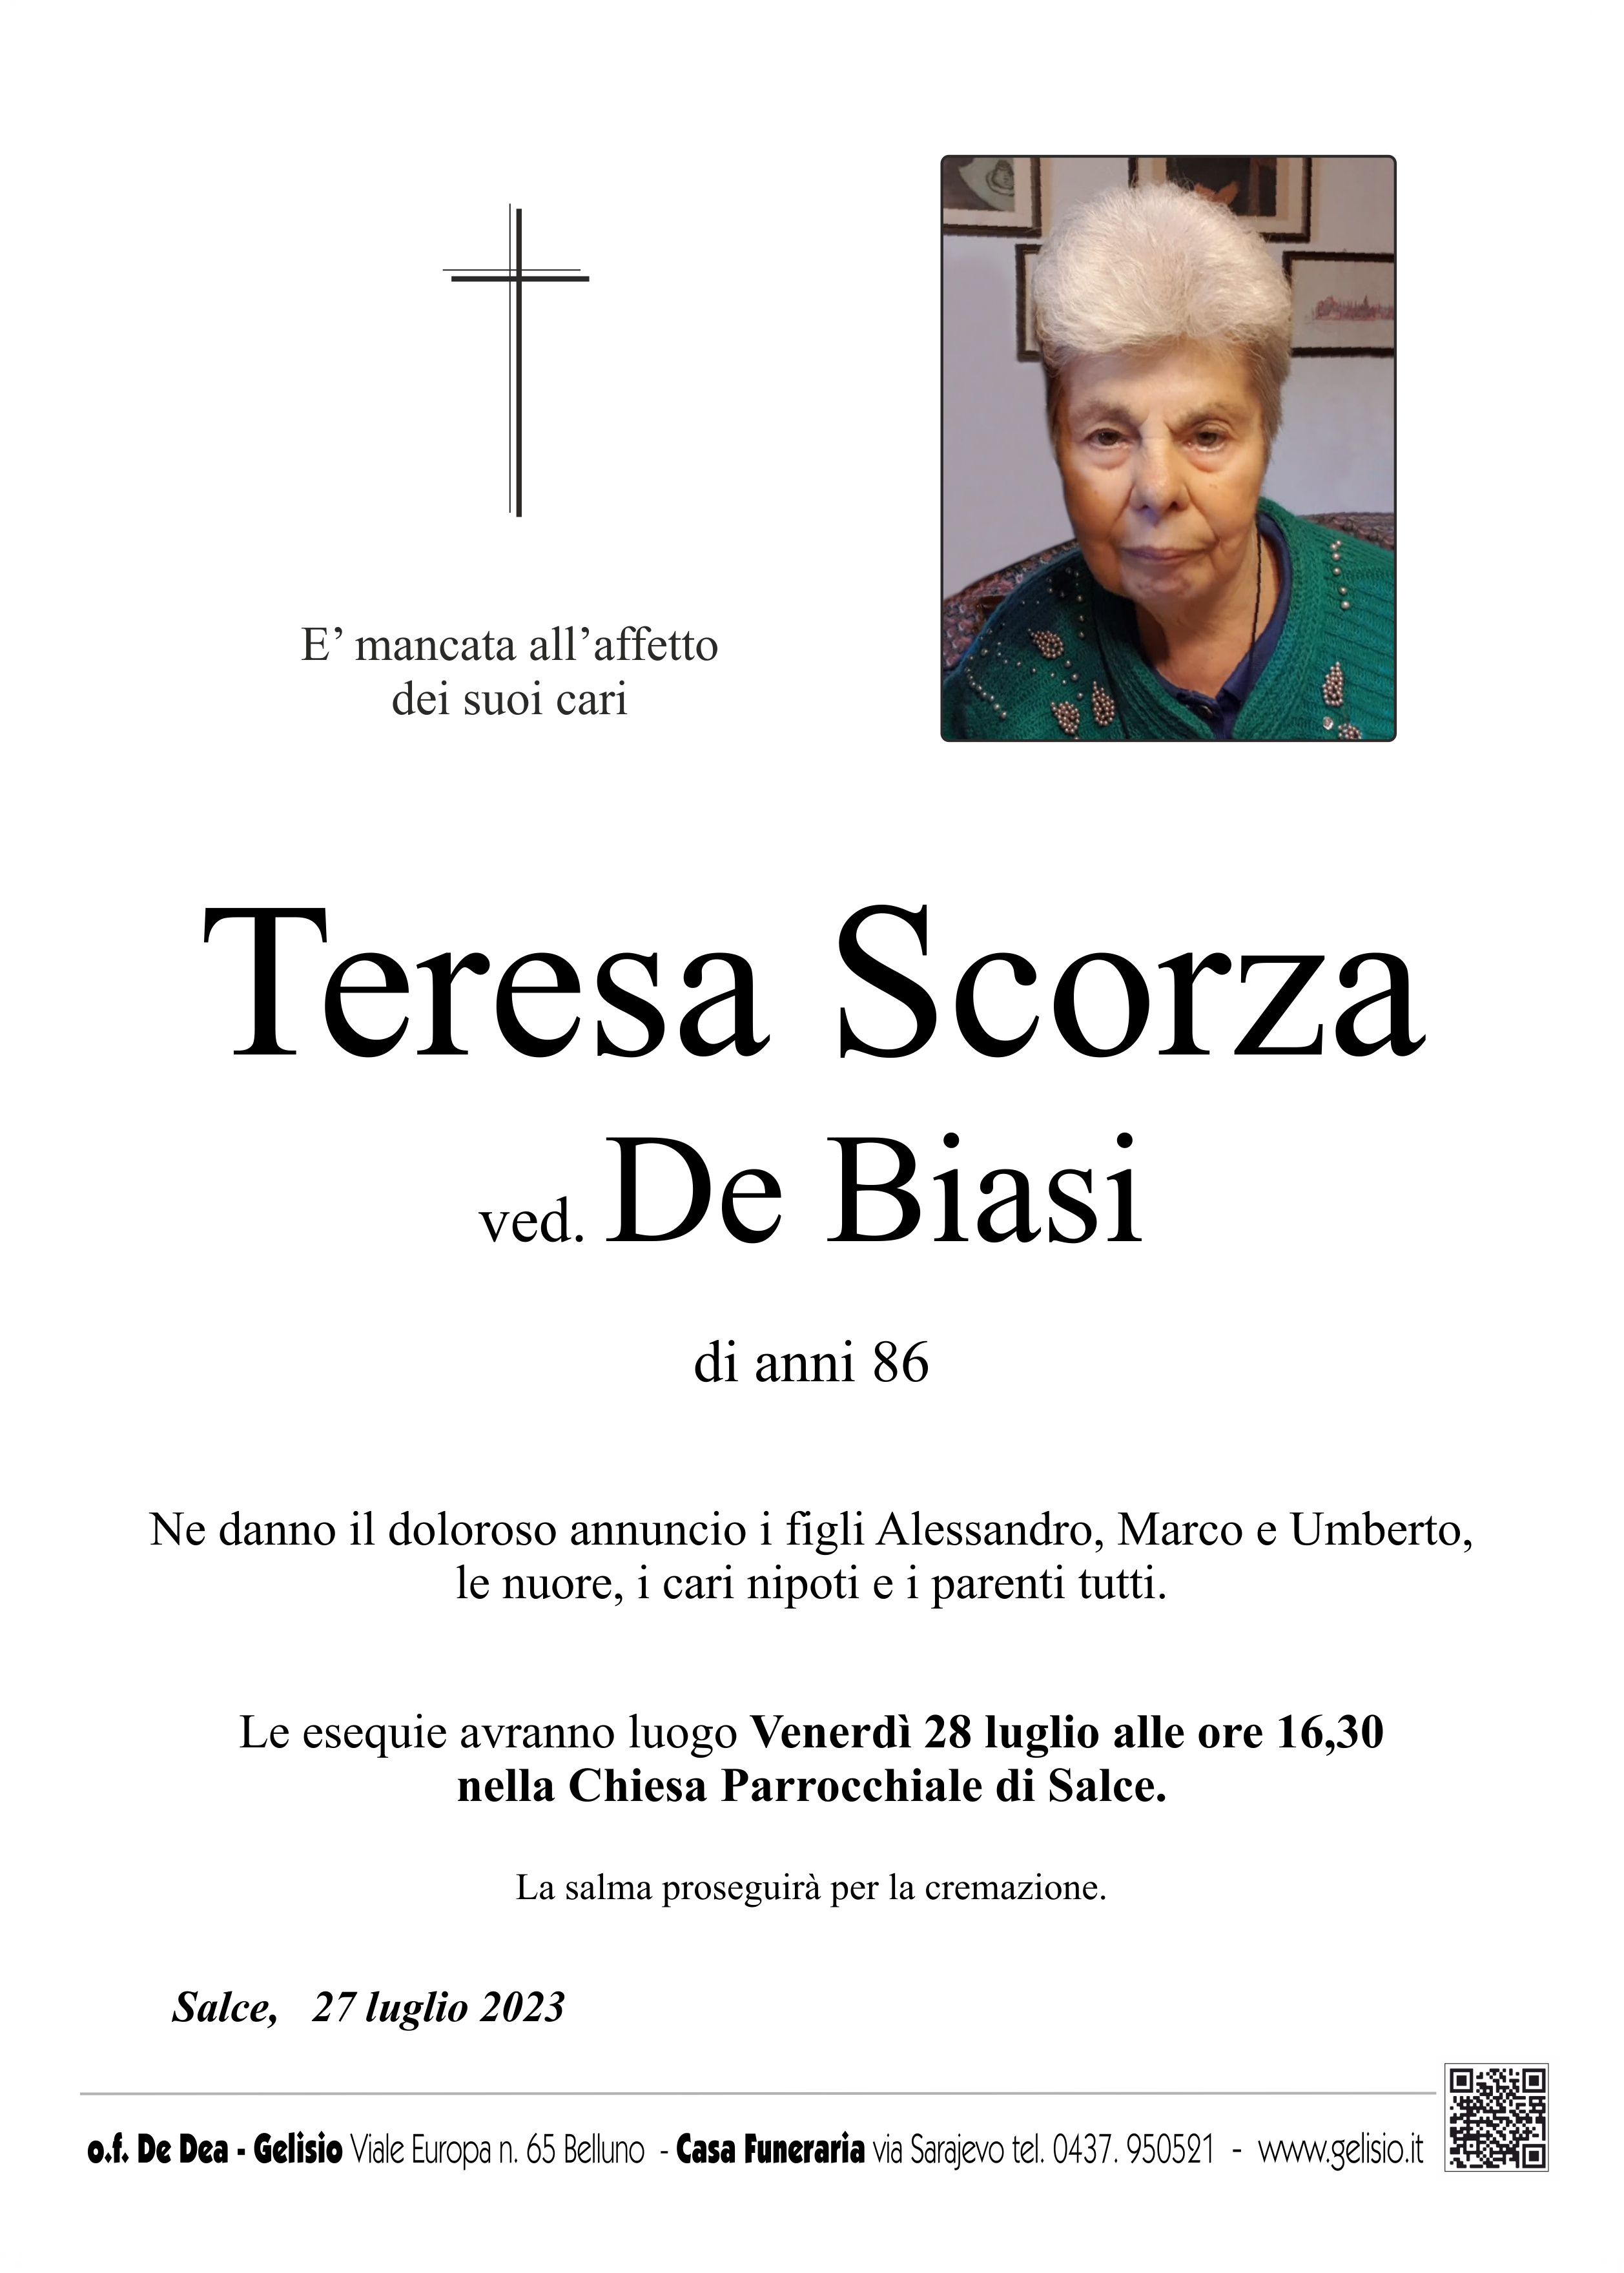 Scorza Teresa